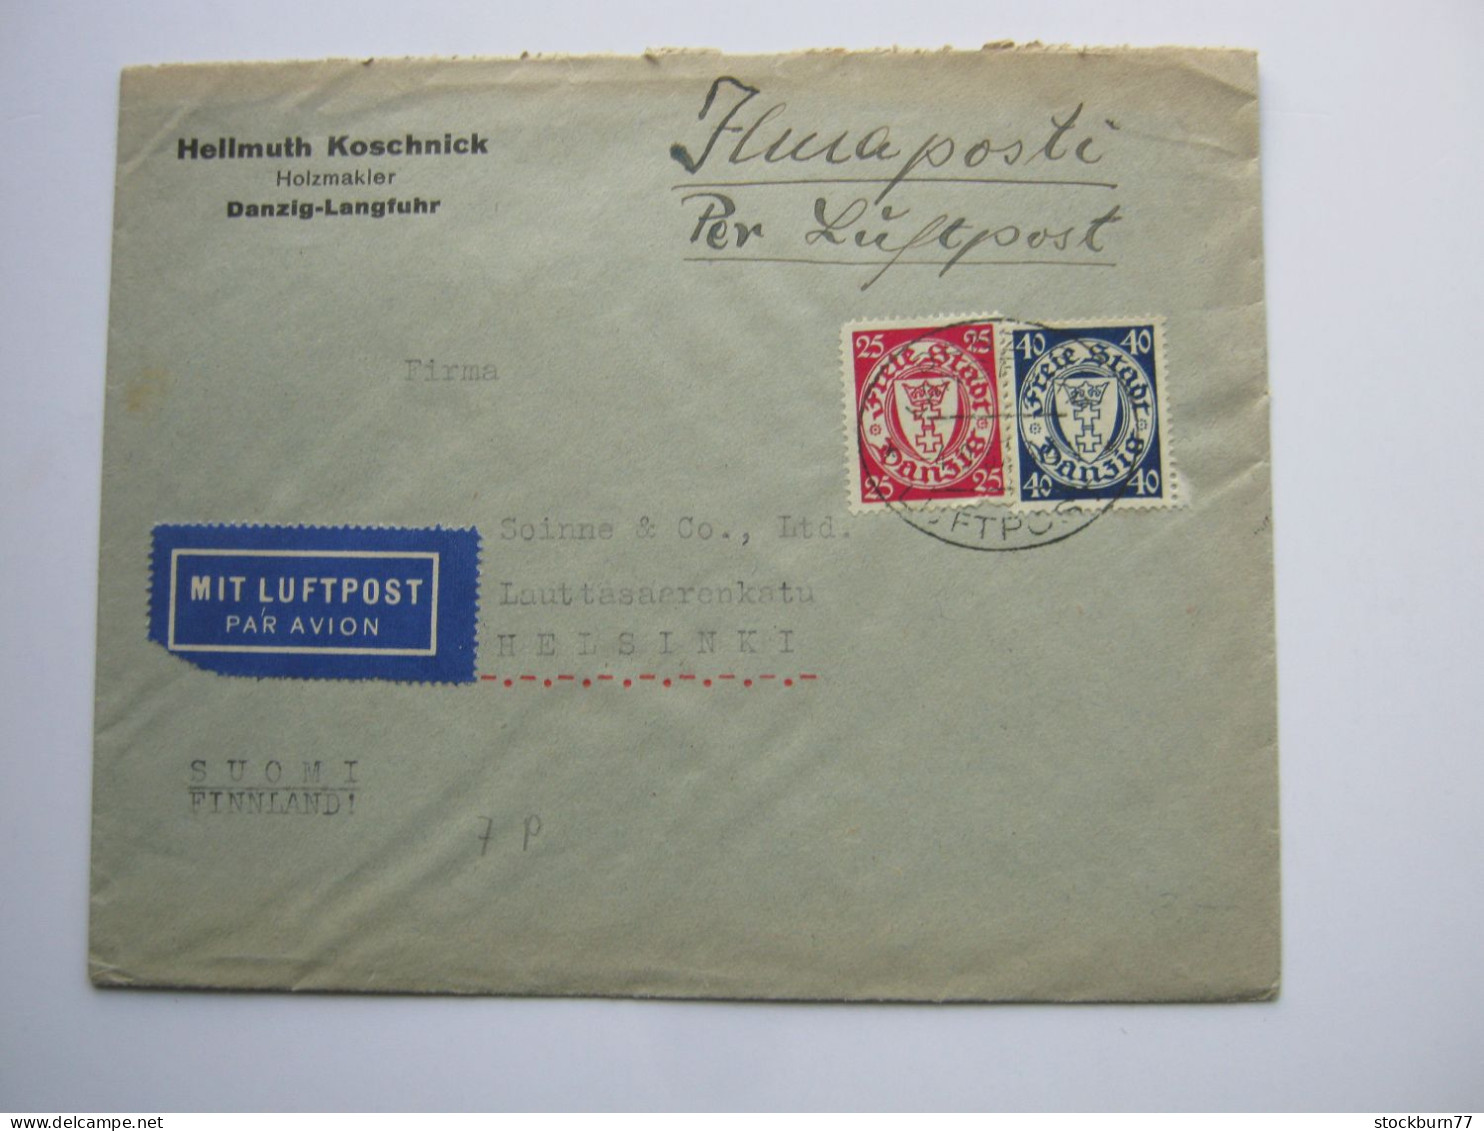 DANZIG , Luftpostbrief  1937 Aus Danzig Nach Finnland - Briefe U. Dokumente